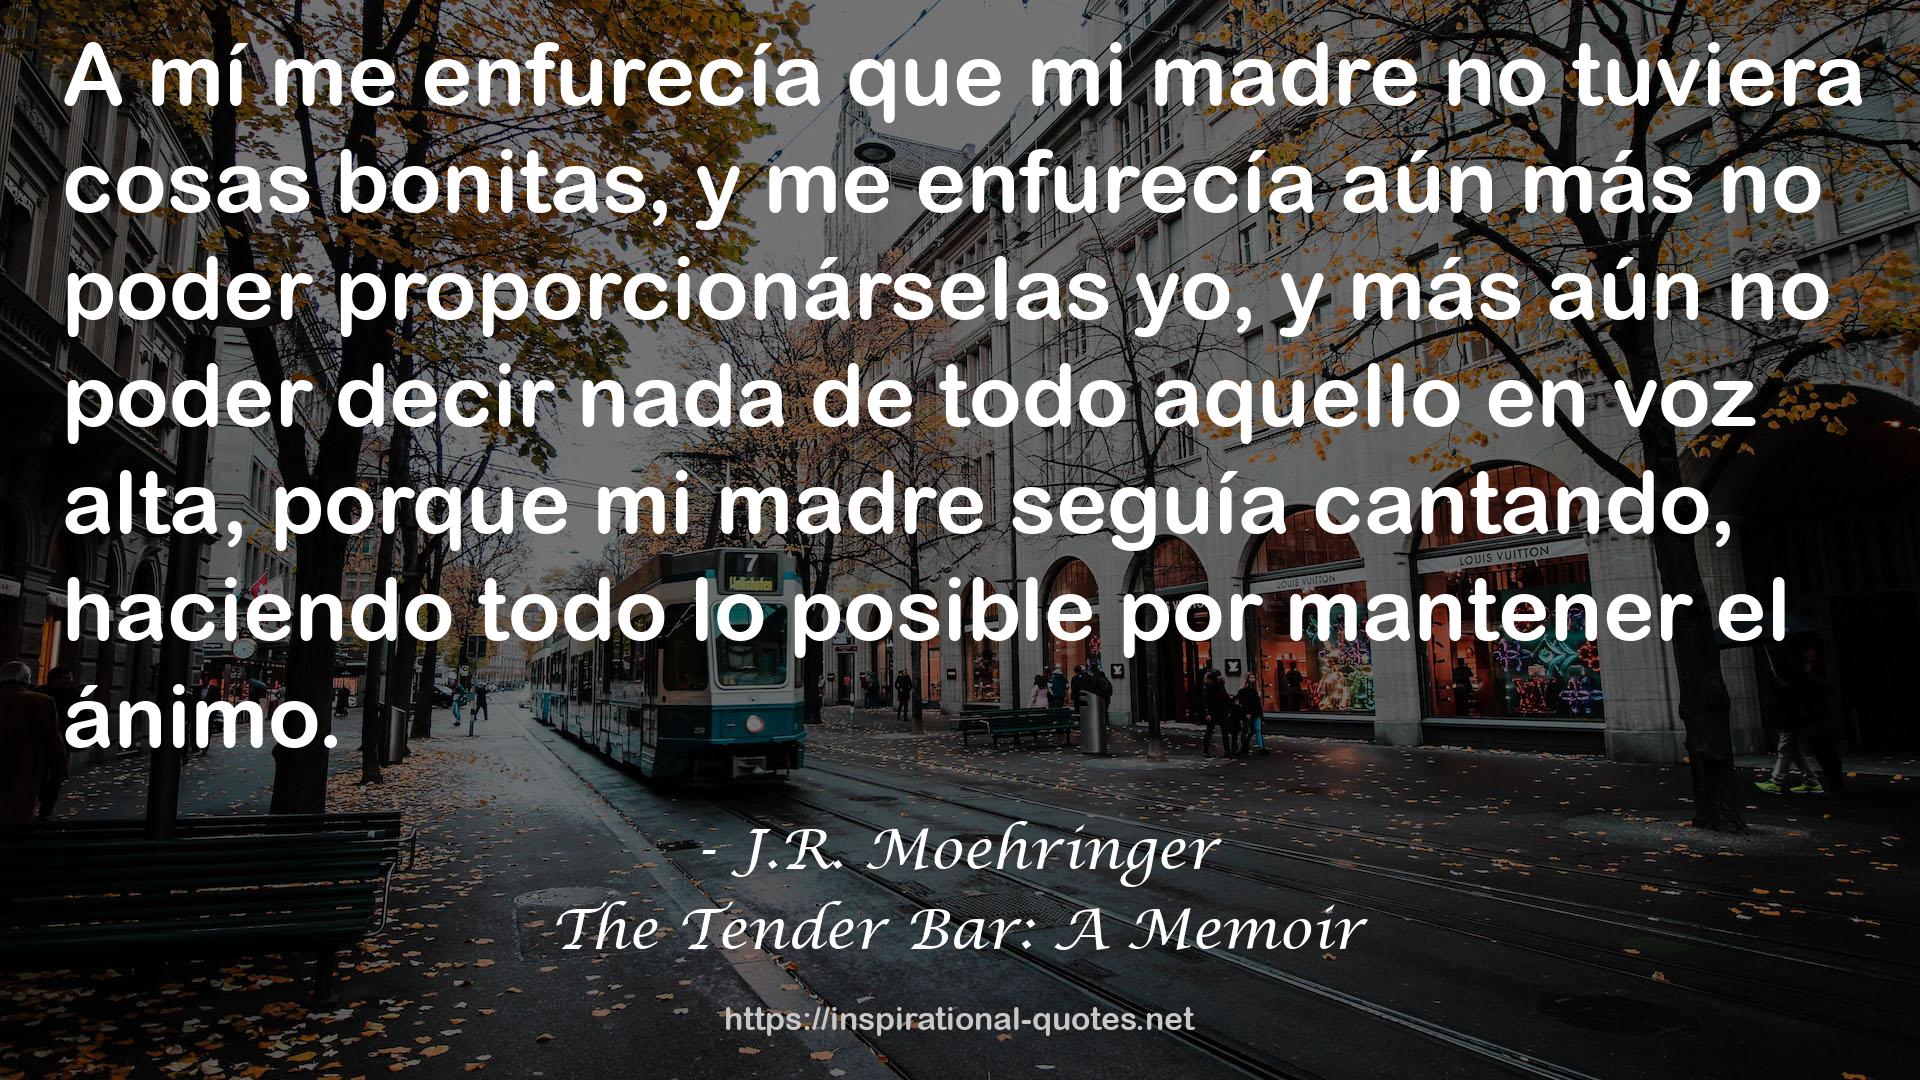 The Tender Bar: A Memoir QUOTES